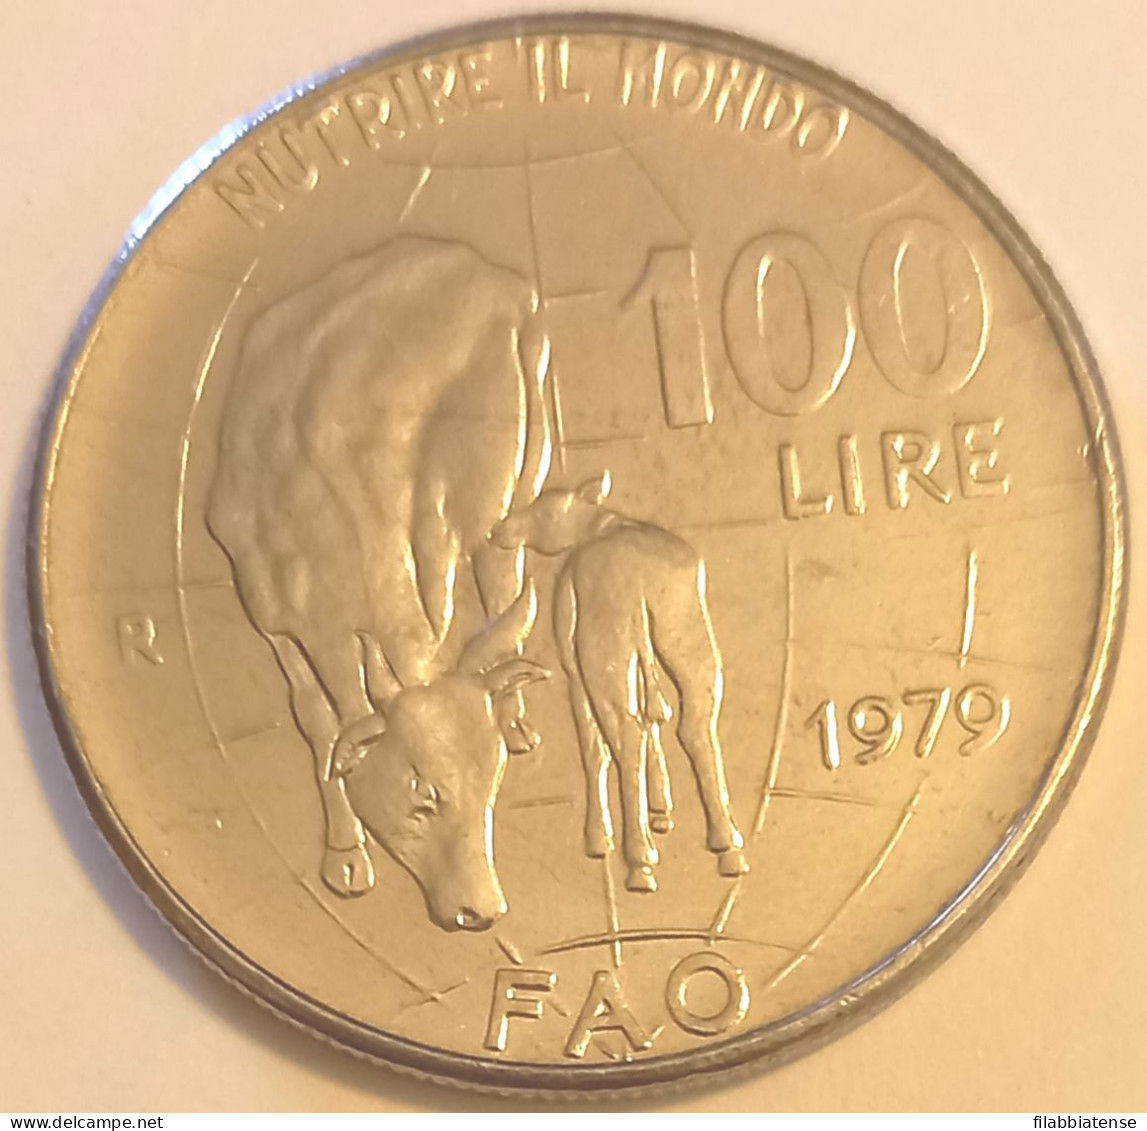 1979 - Italia 100 Lire F.A.O.    ----- - 100 Liras